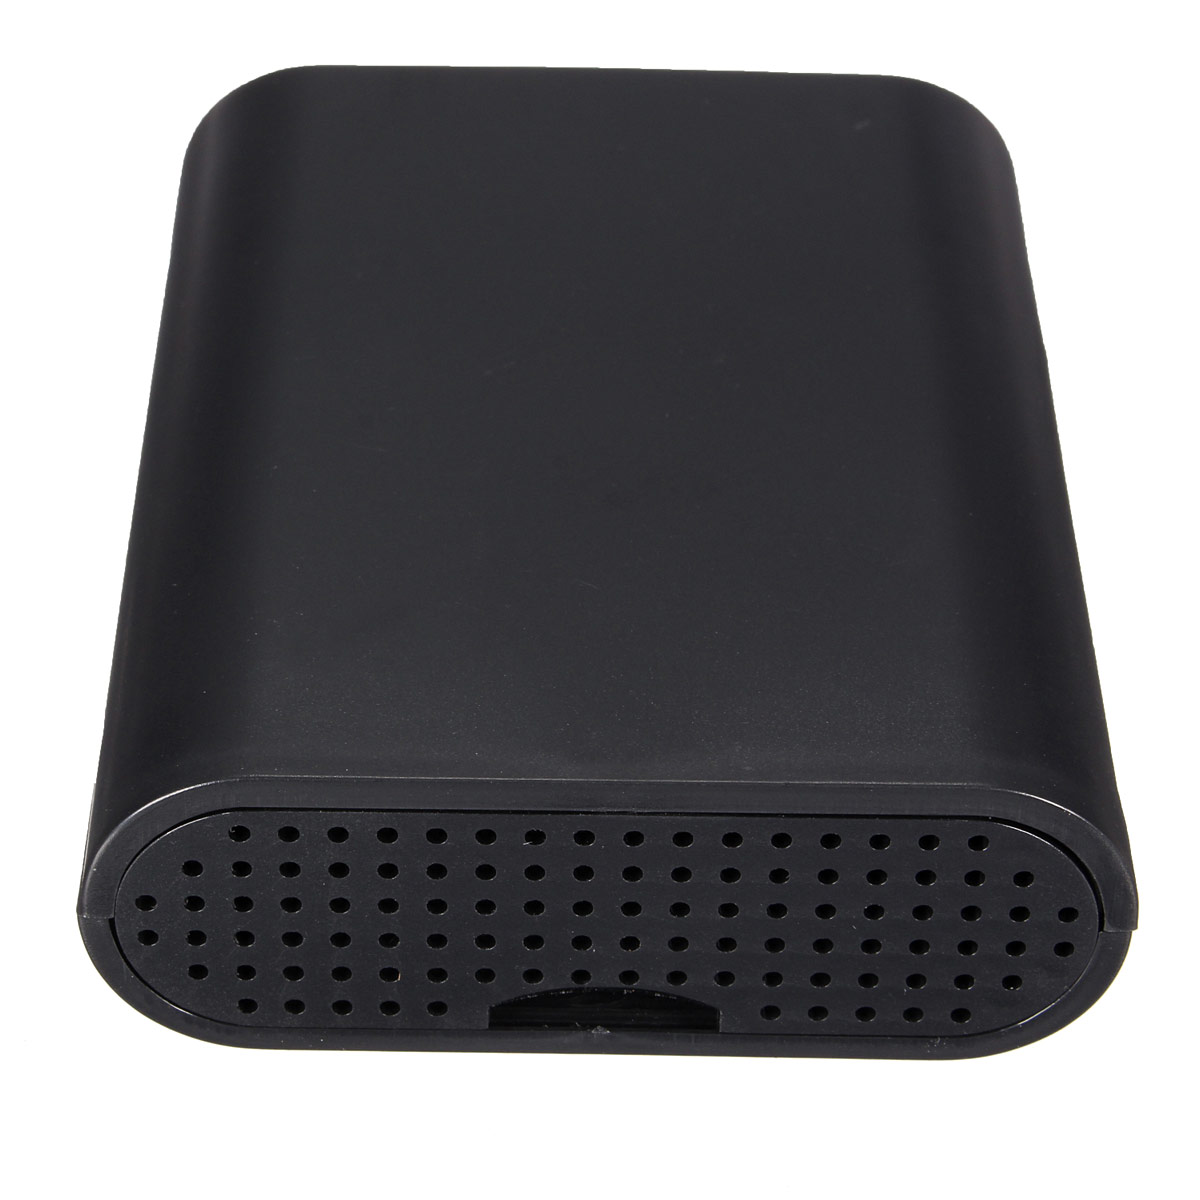 10PCS Black Cover Case Shell For Raspberry Pi Model B+ 9